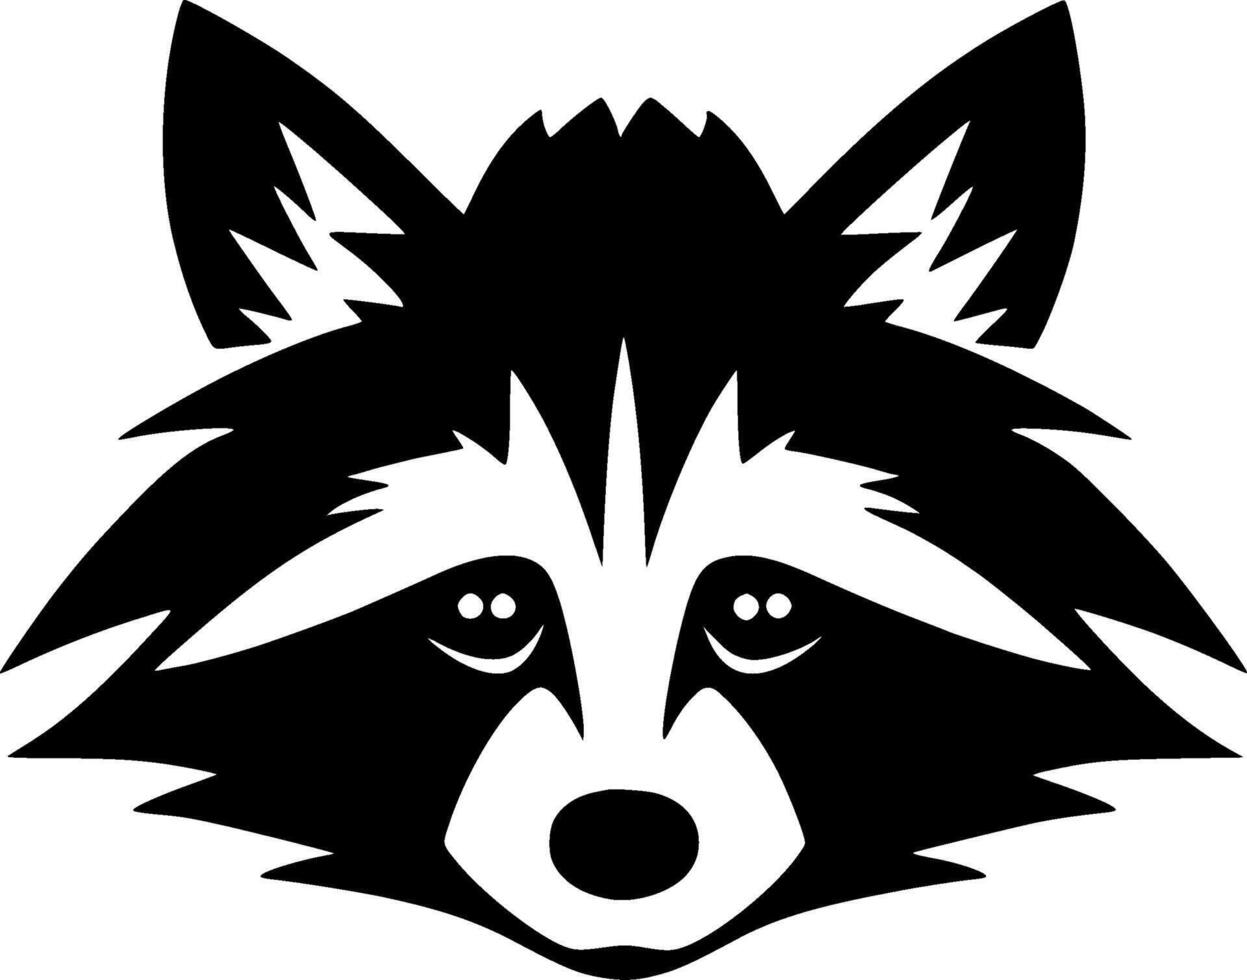 wasbeer - hoog kwaliteit logo - illustratie ideaal voor t-shirt grafisch vector